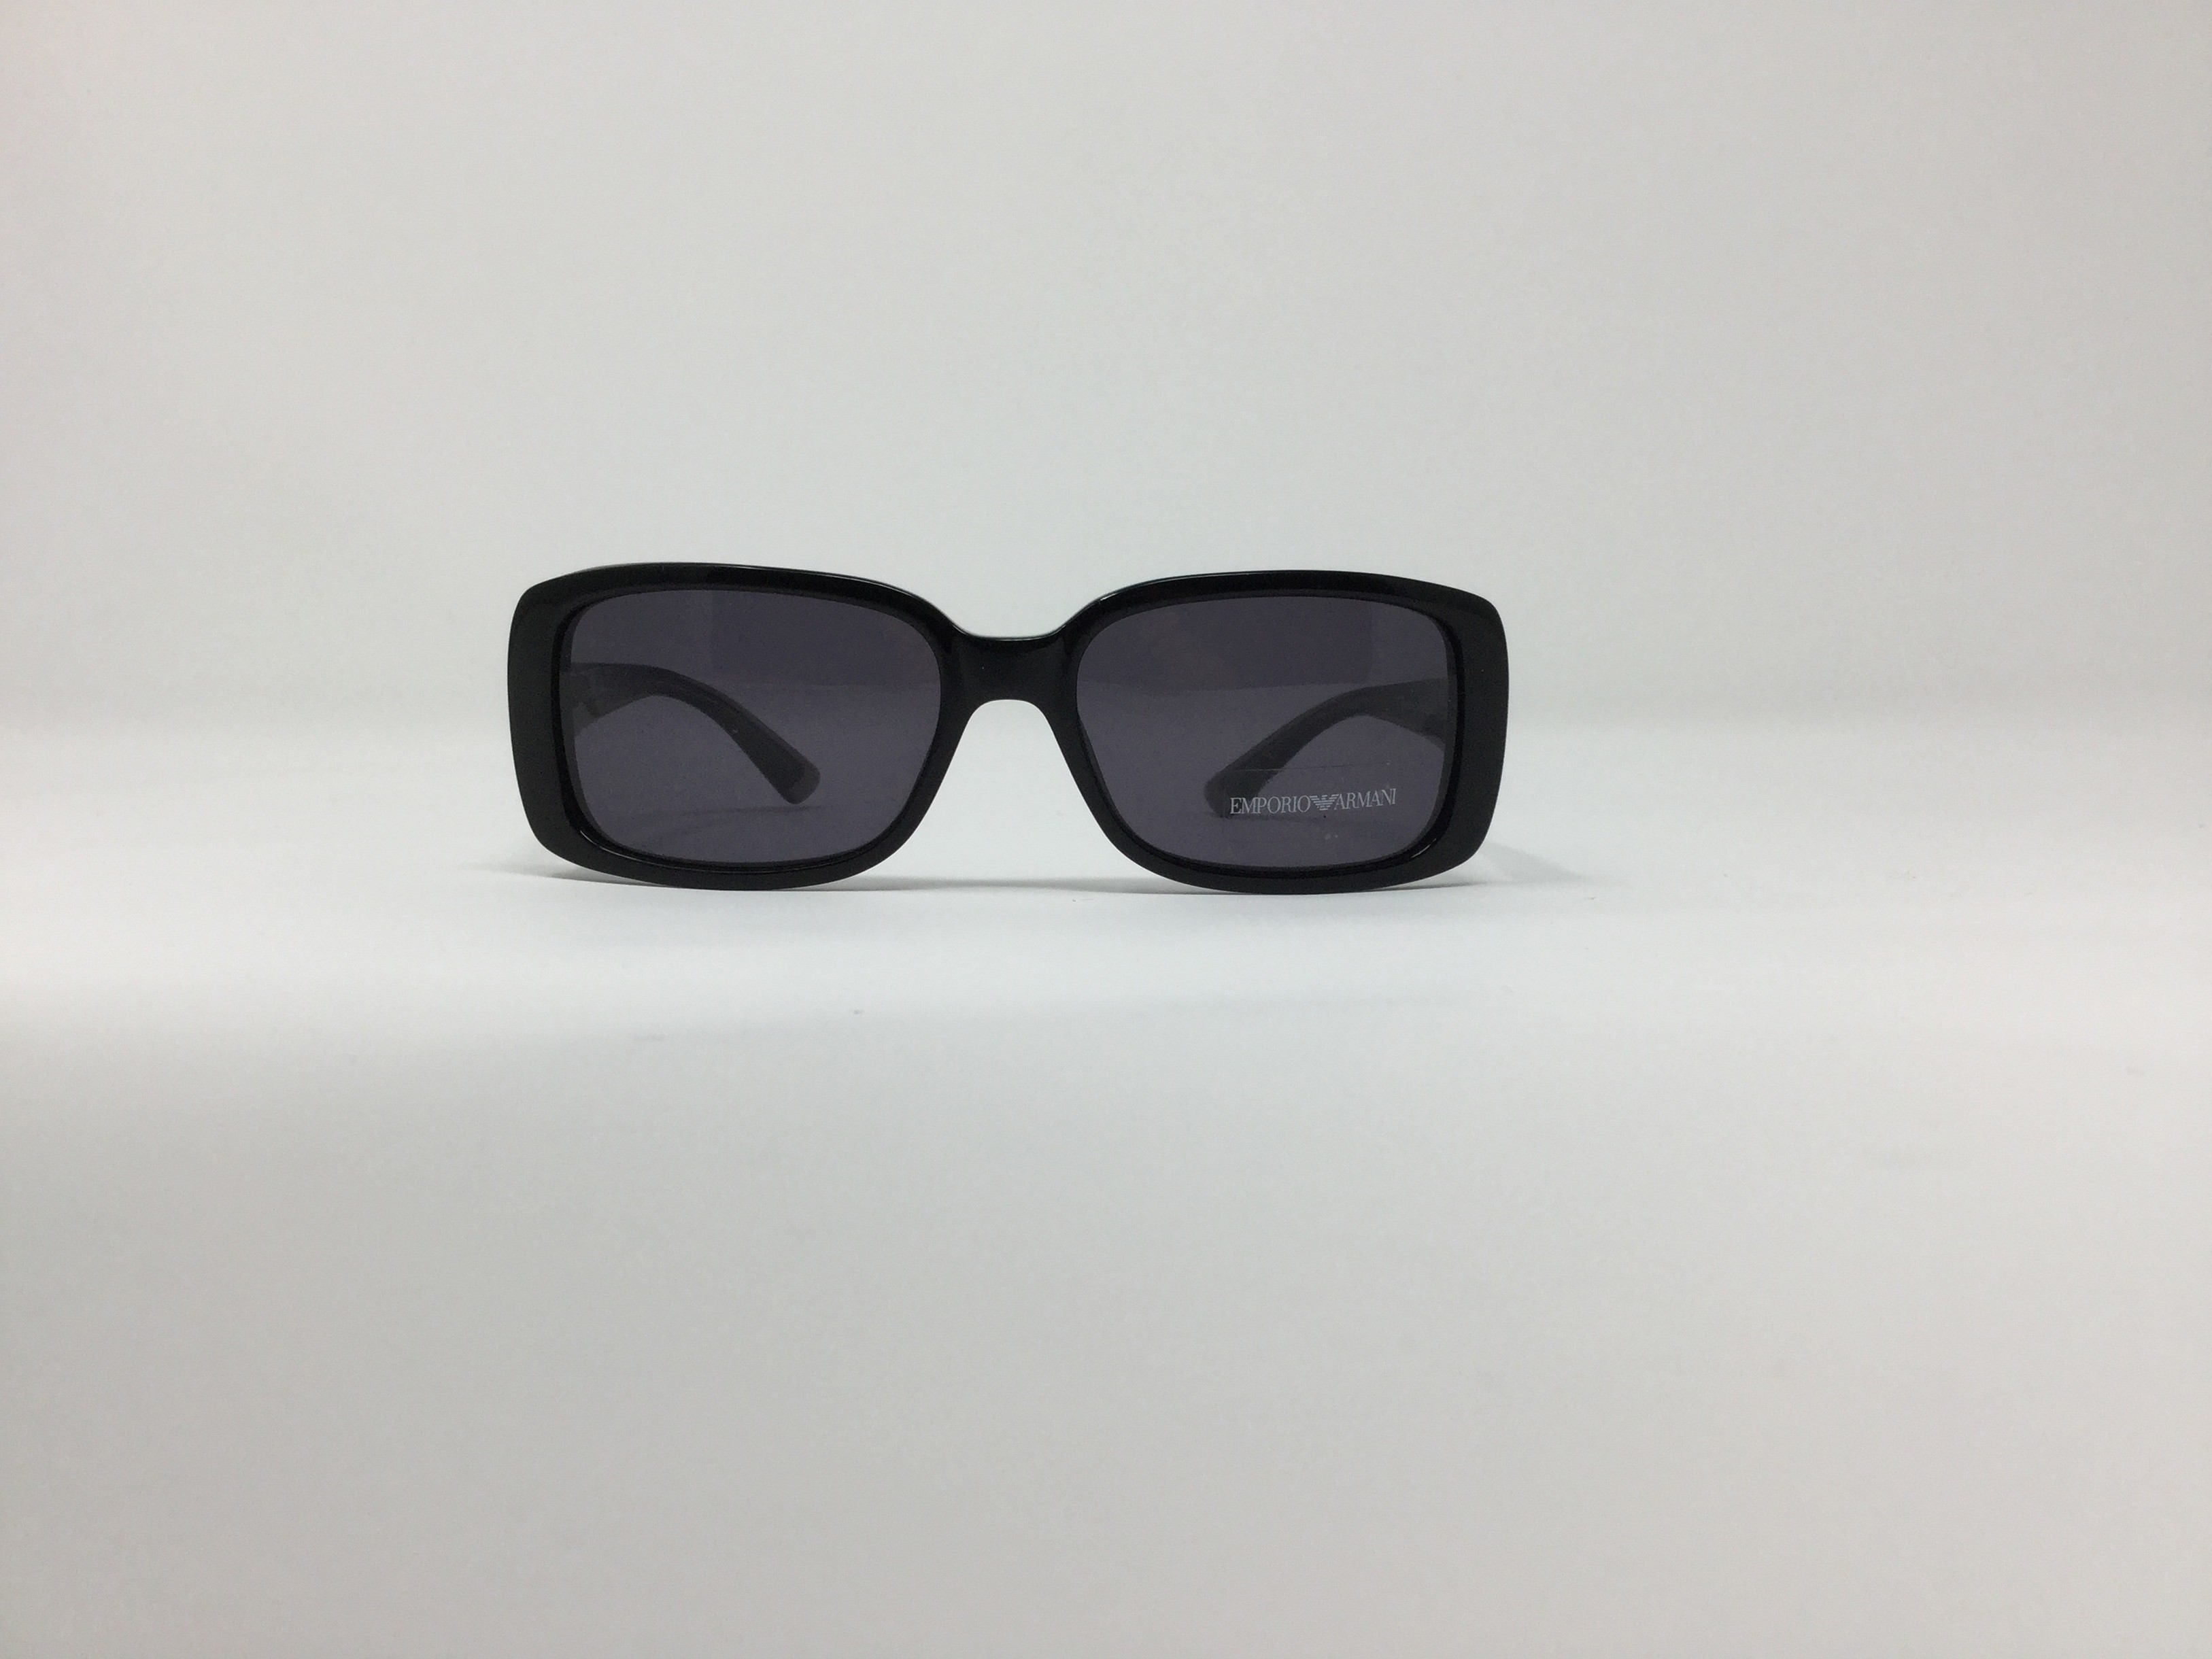 armani sunglasses for women